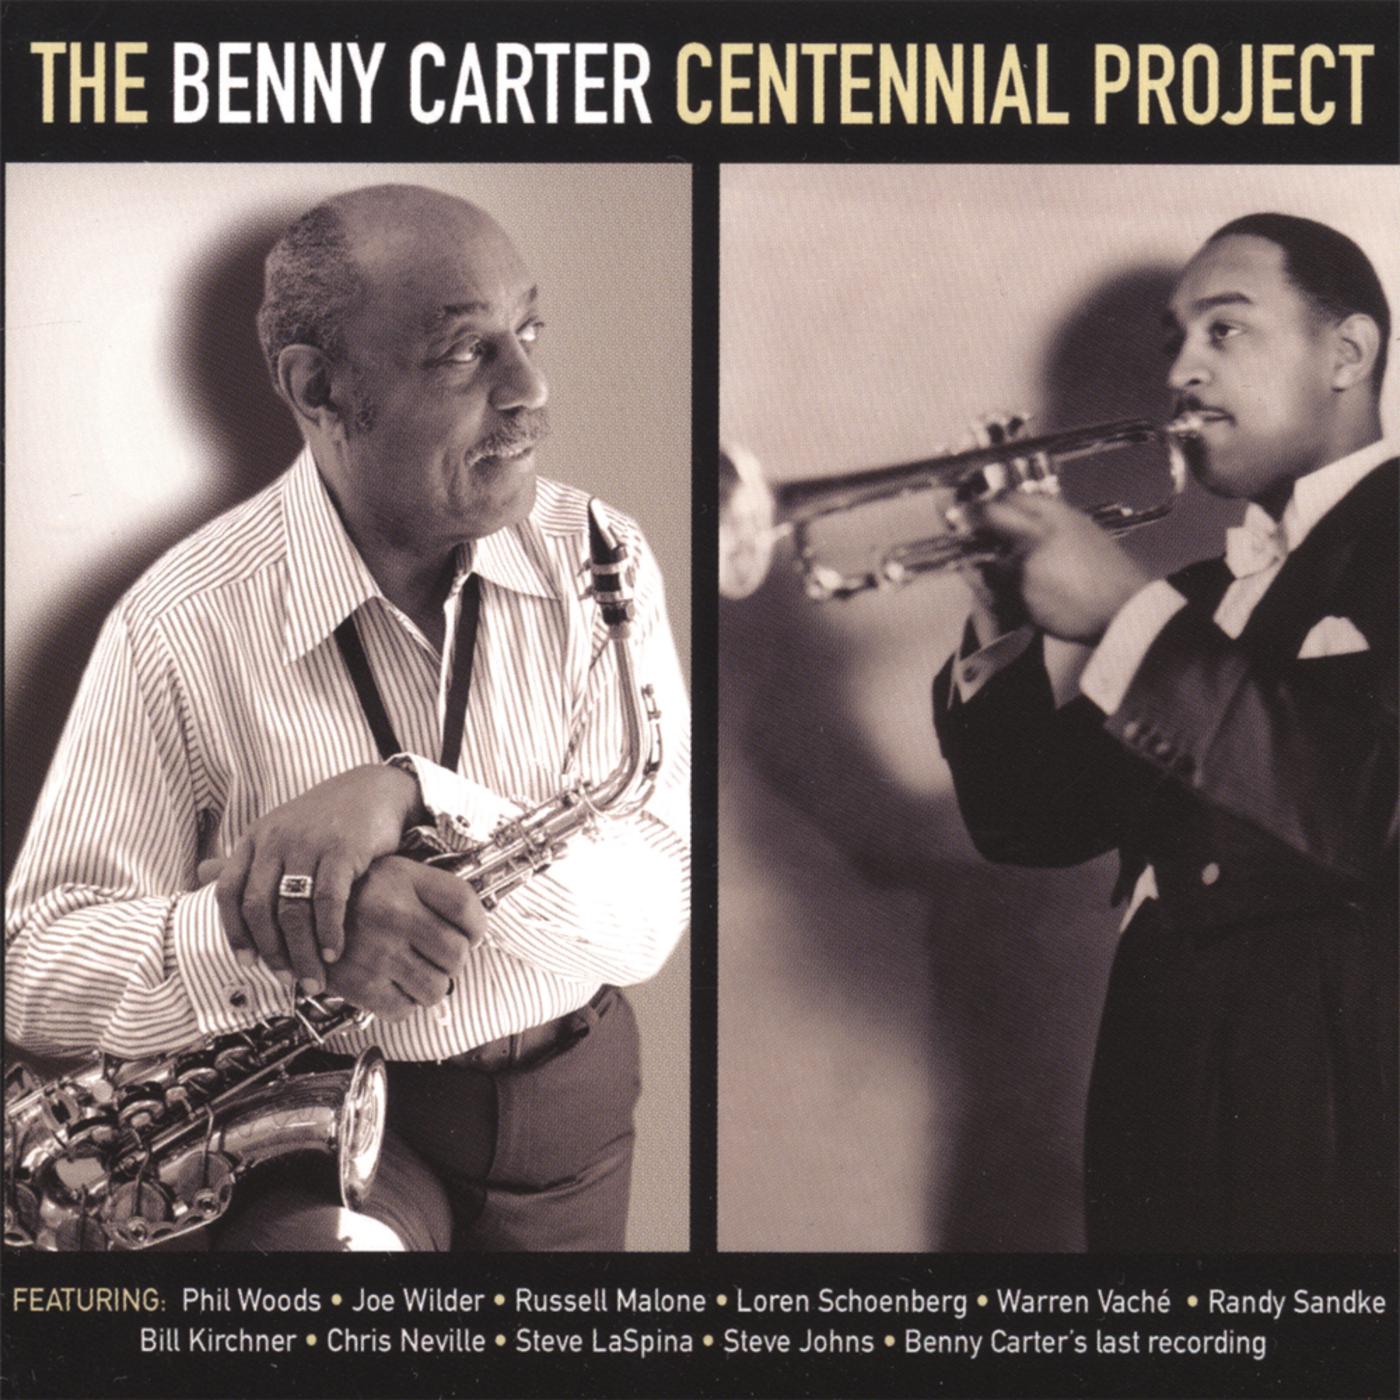 The Benny Carter Centennial Project